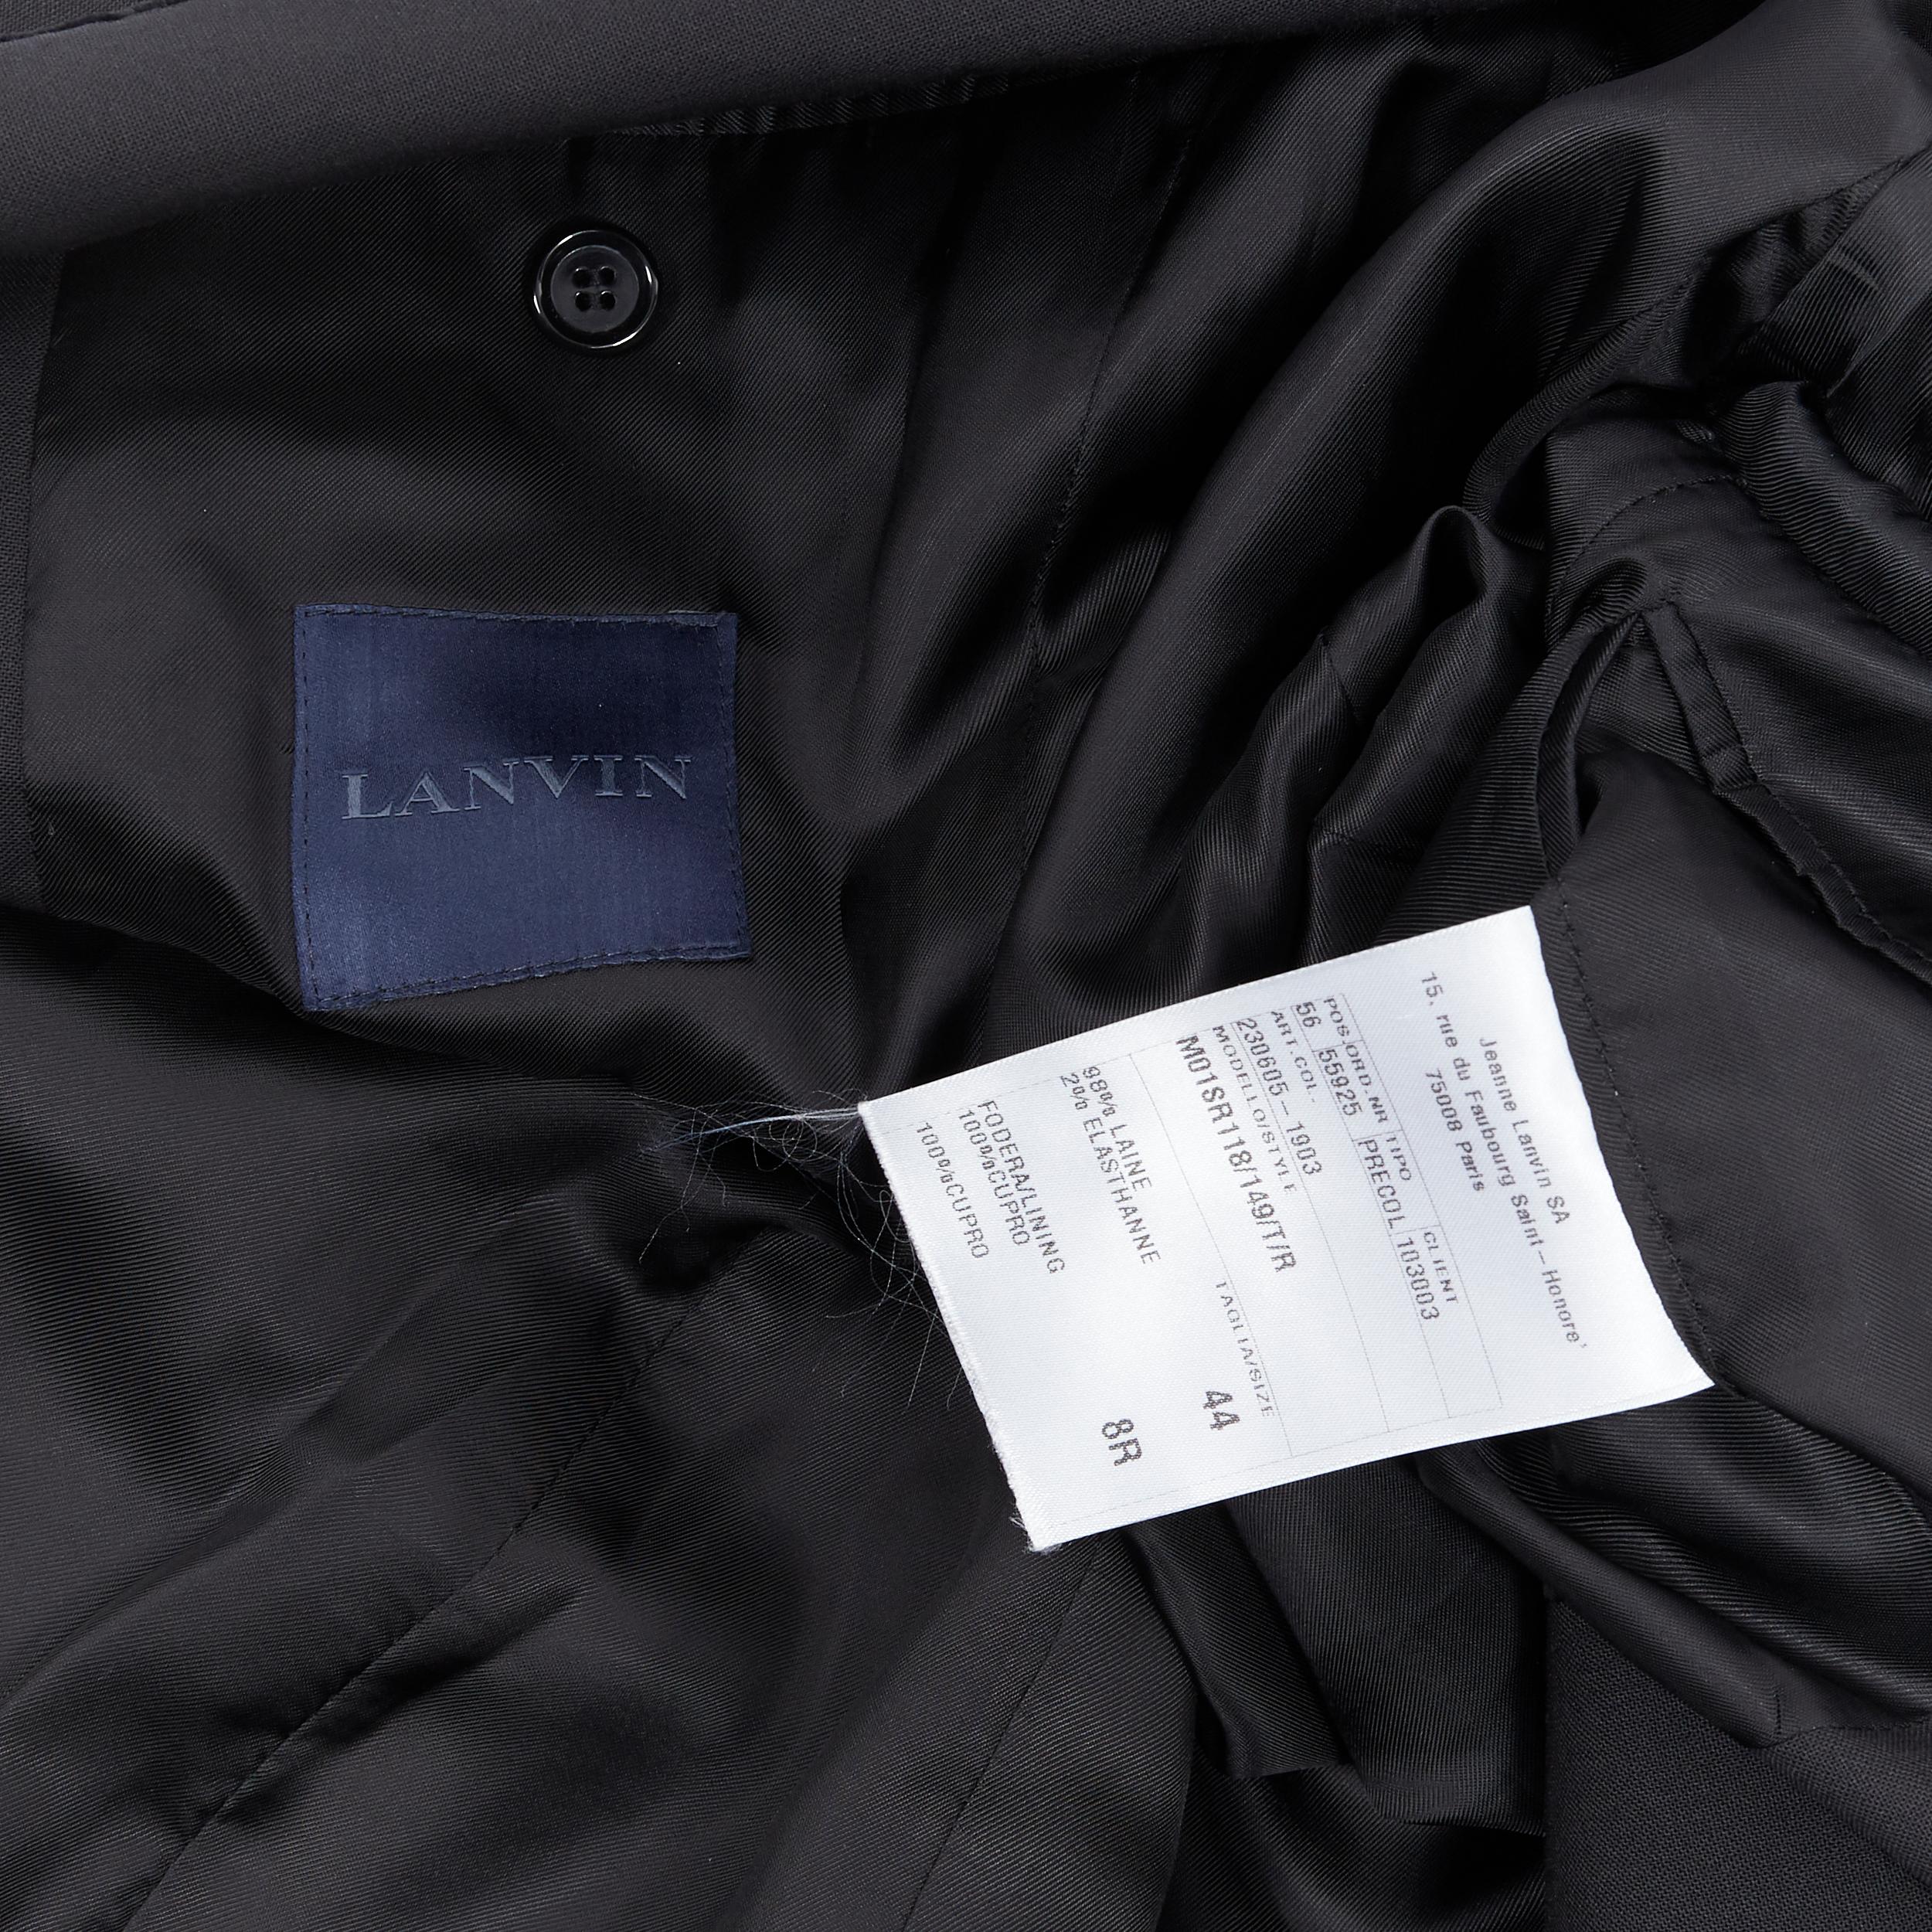 LANVIN ALBER ELBAZ wool blend black velvet peak lapel formal blazer jacket FR44 3